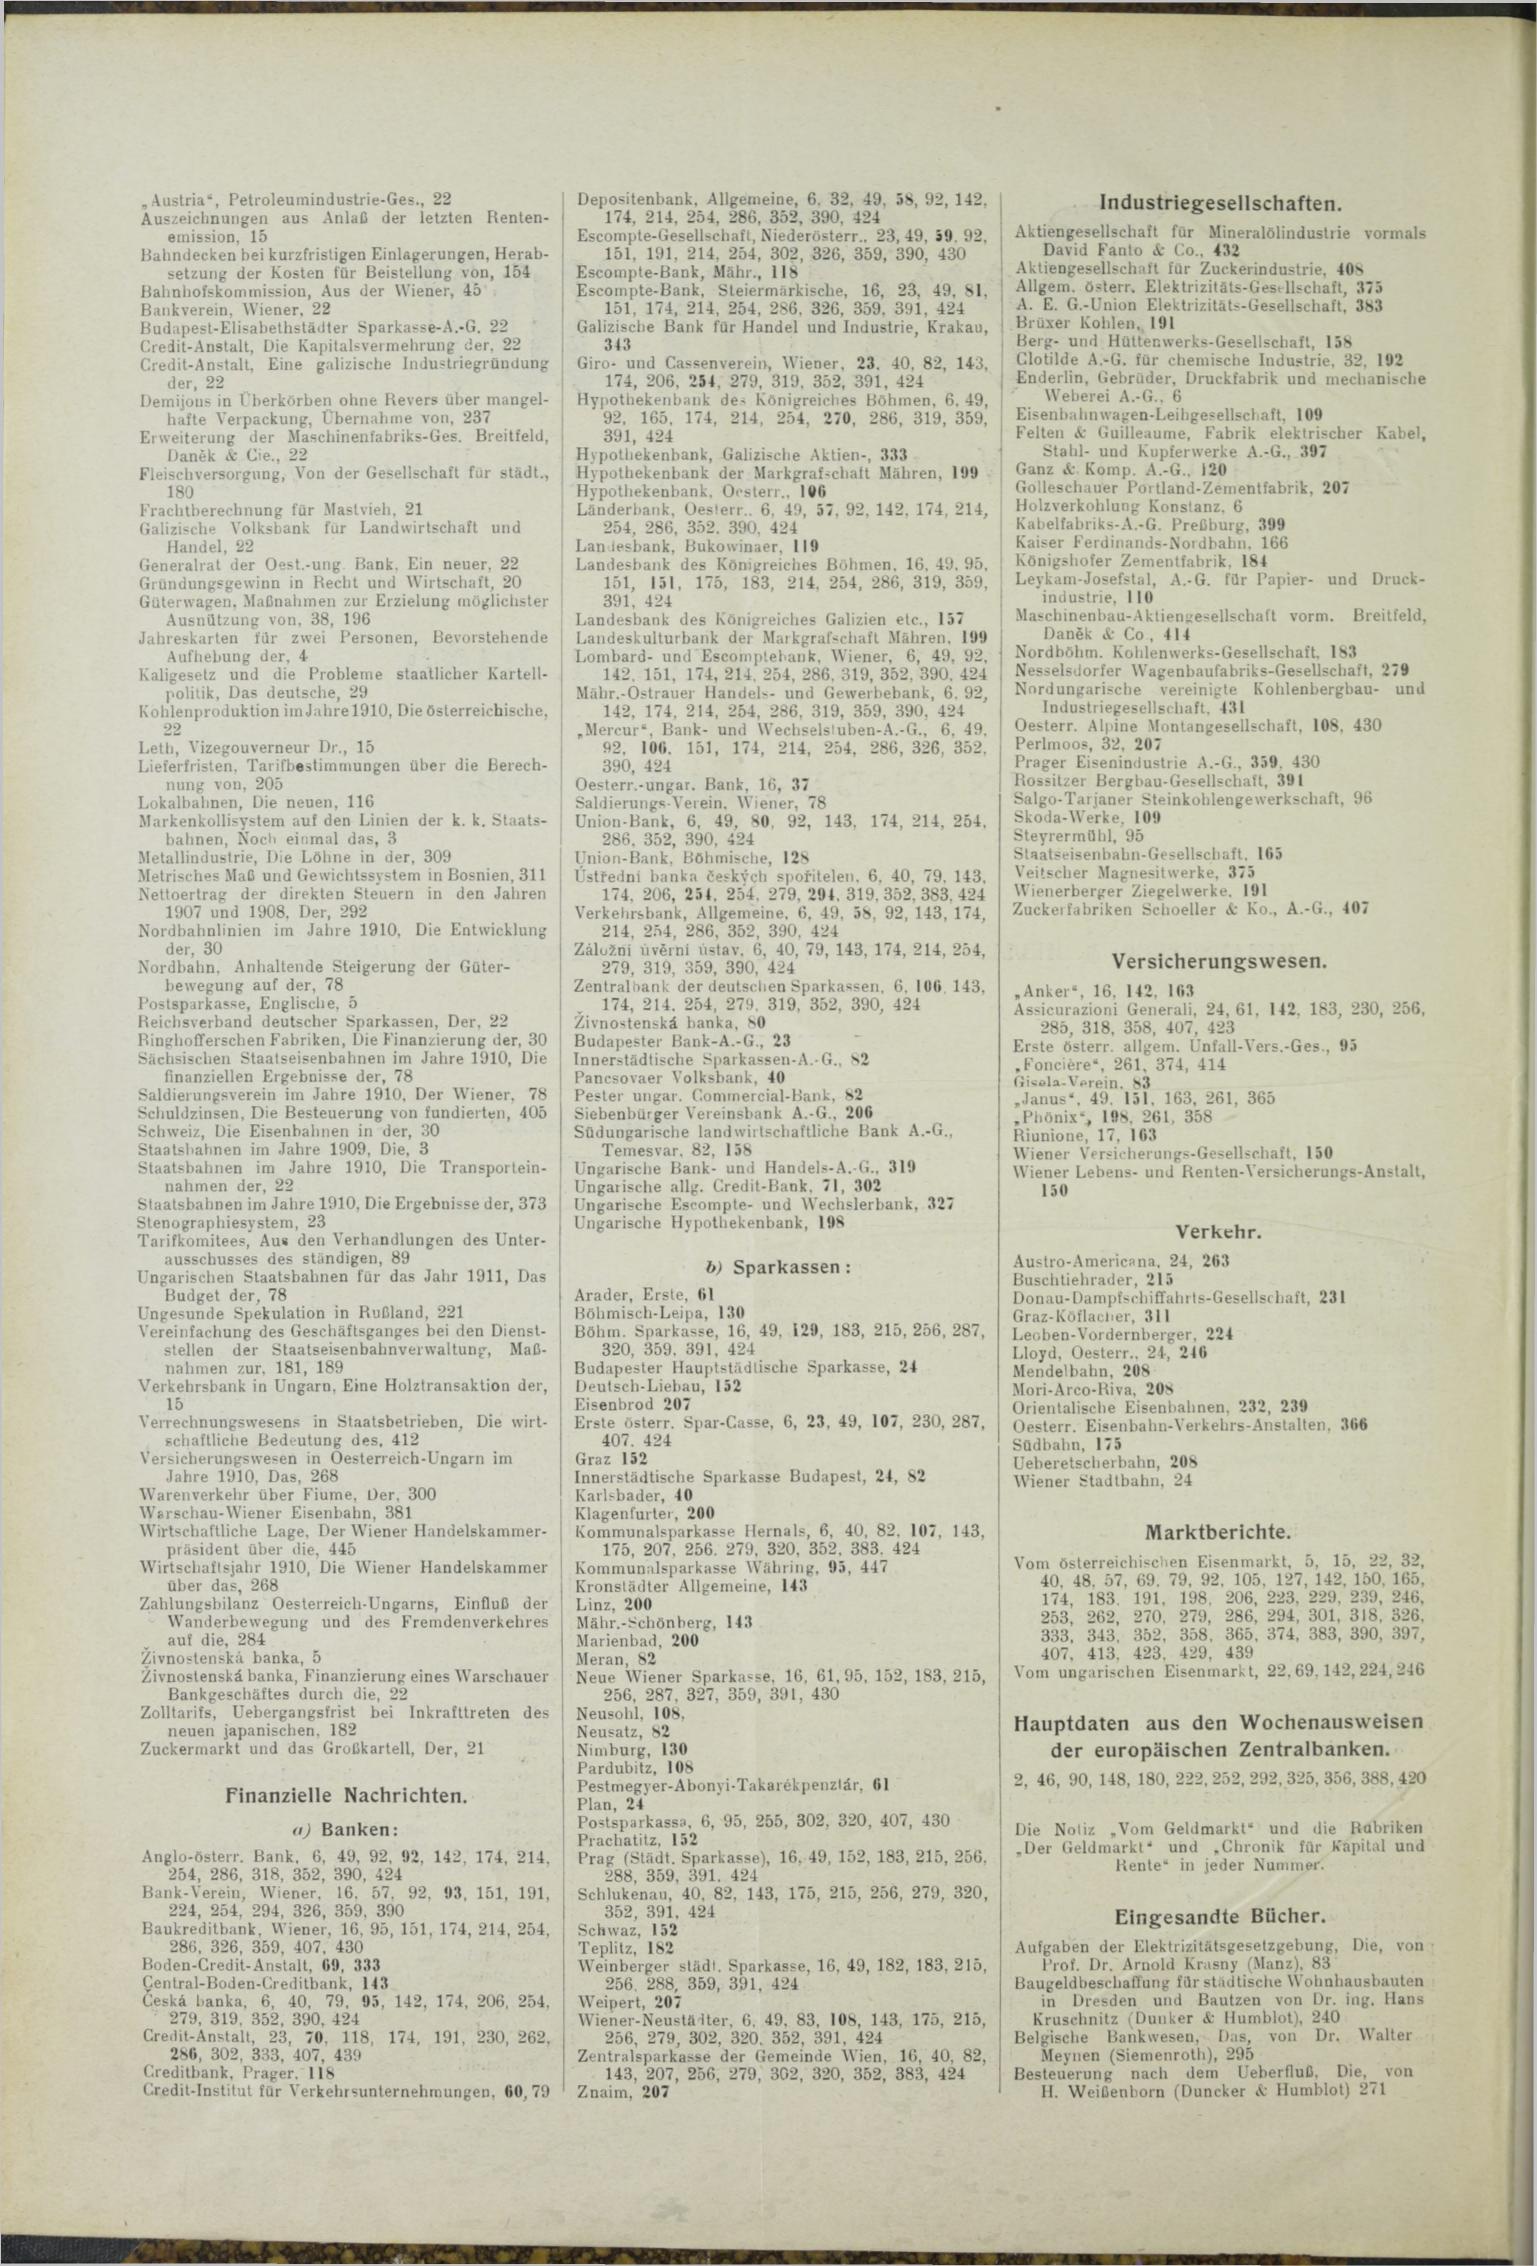 Der Tresor 28.10.1911 - Seite 10